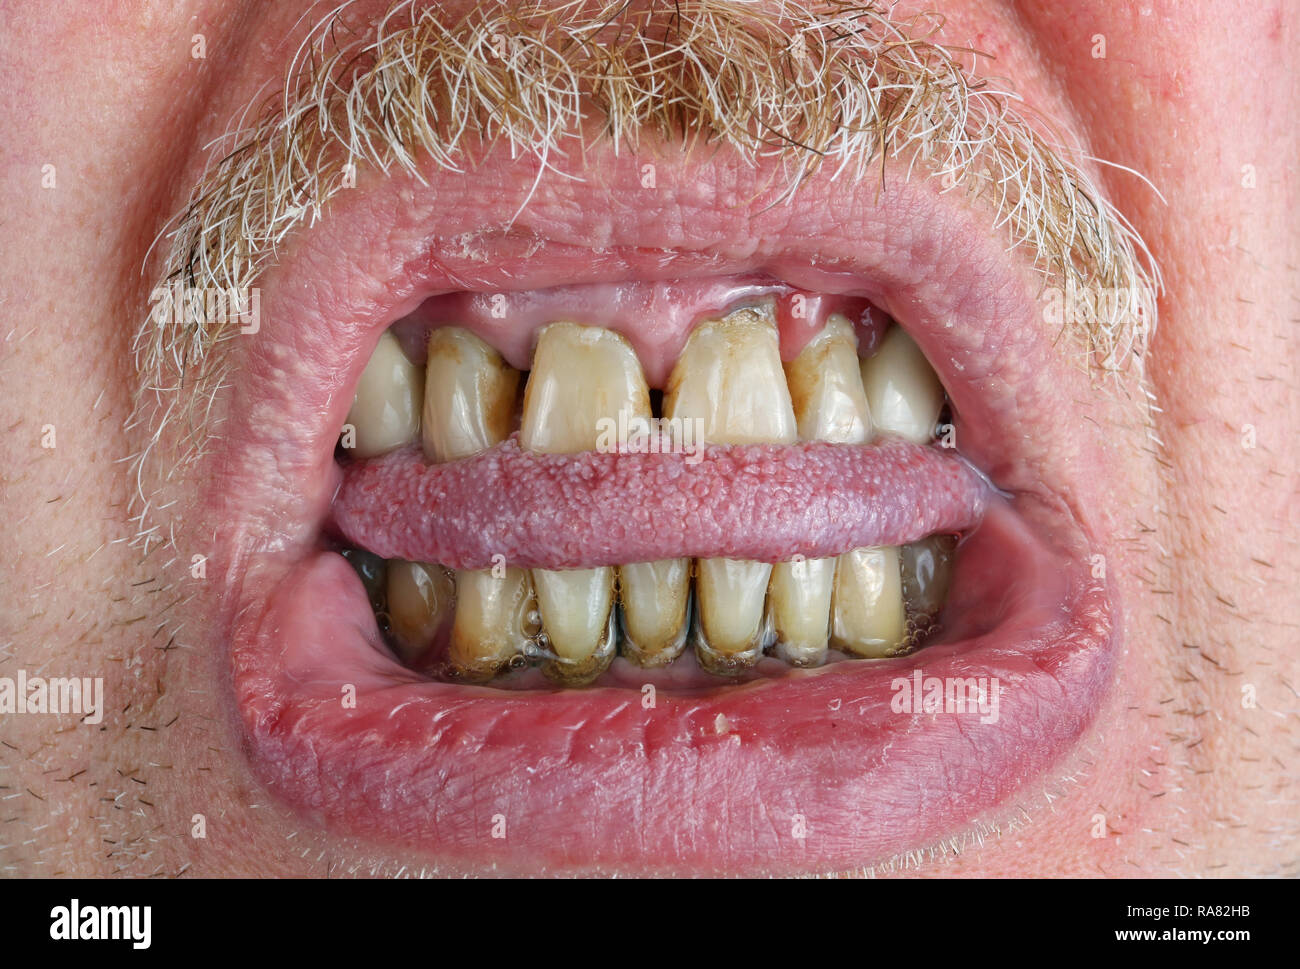 Les dents Jaunes et la moustache, mordu la langue et lèvres sèches dans un vieil homme âgé macro. Les méfaits de l'alcool et le tabac. Macro Studio shot Banque D'Images